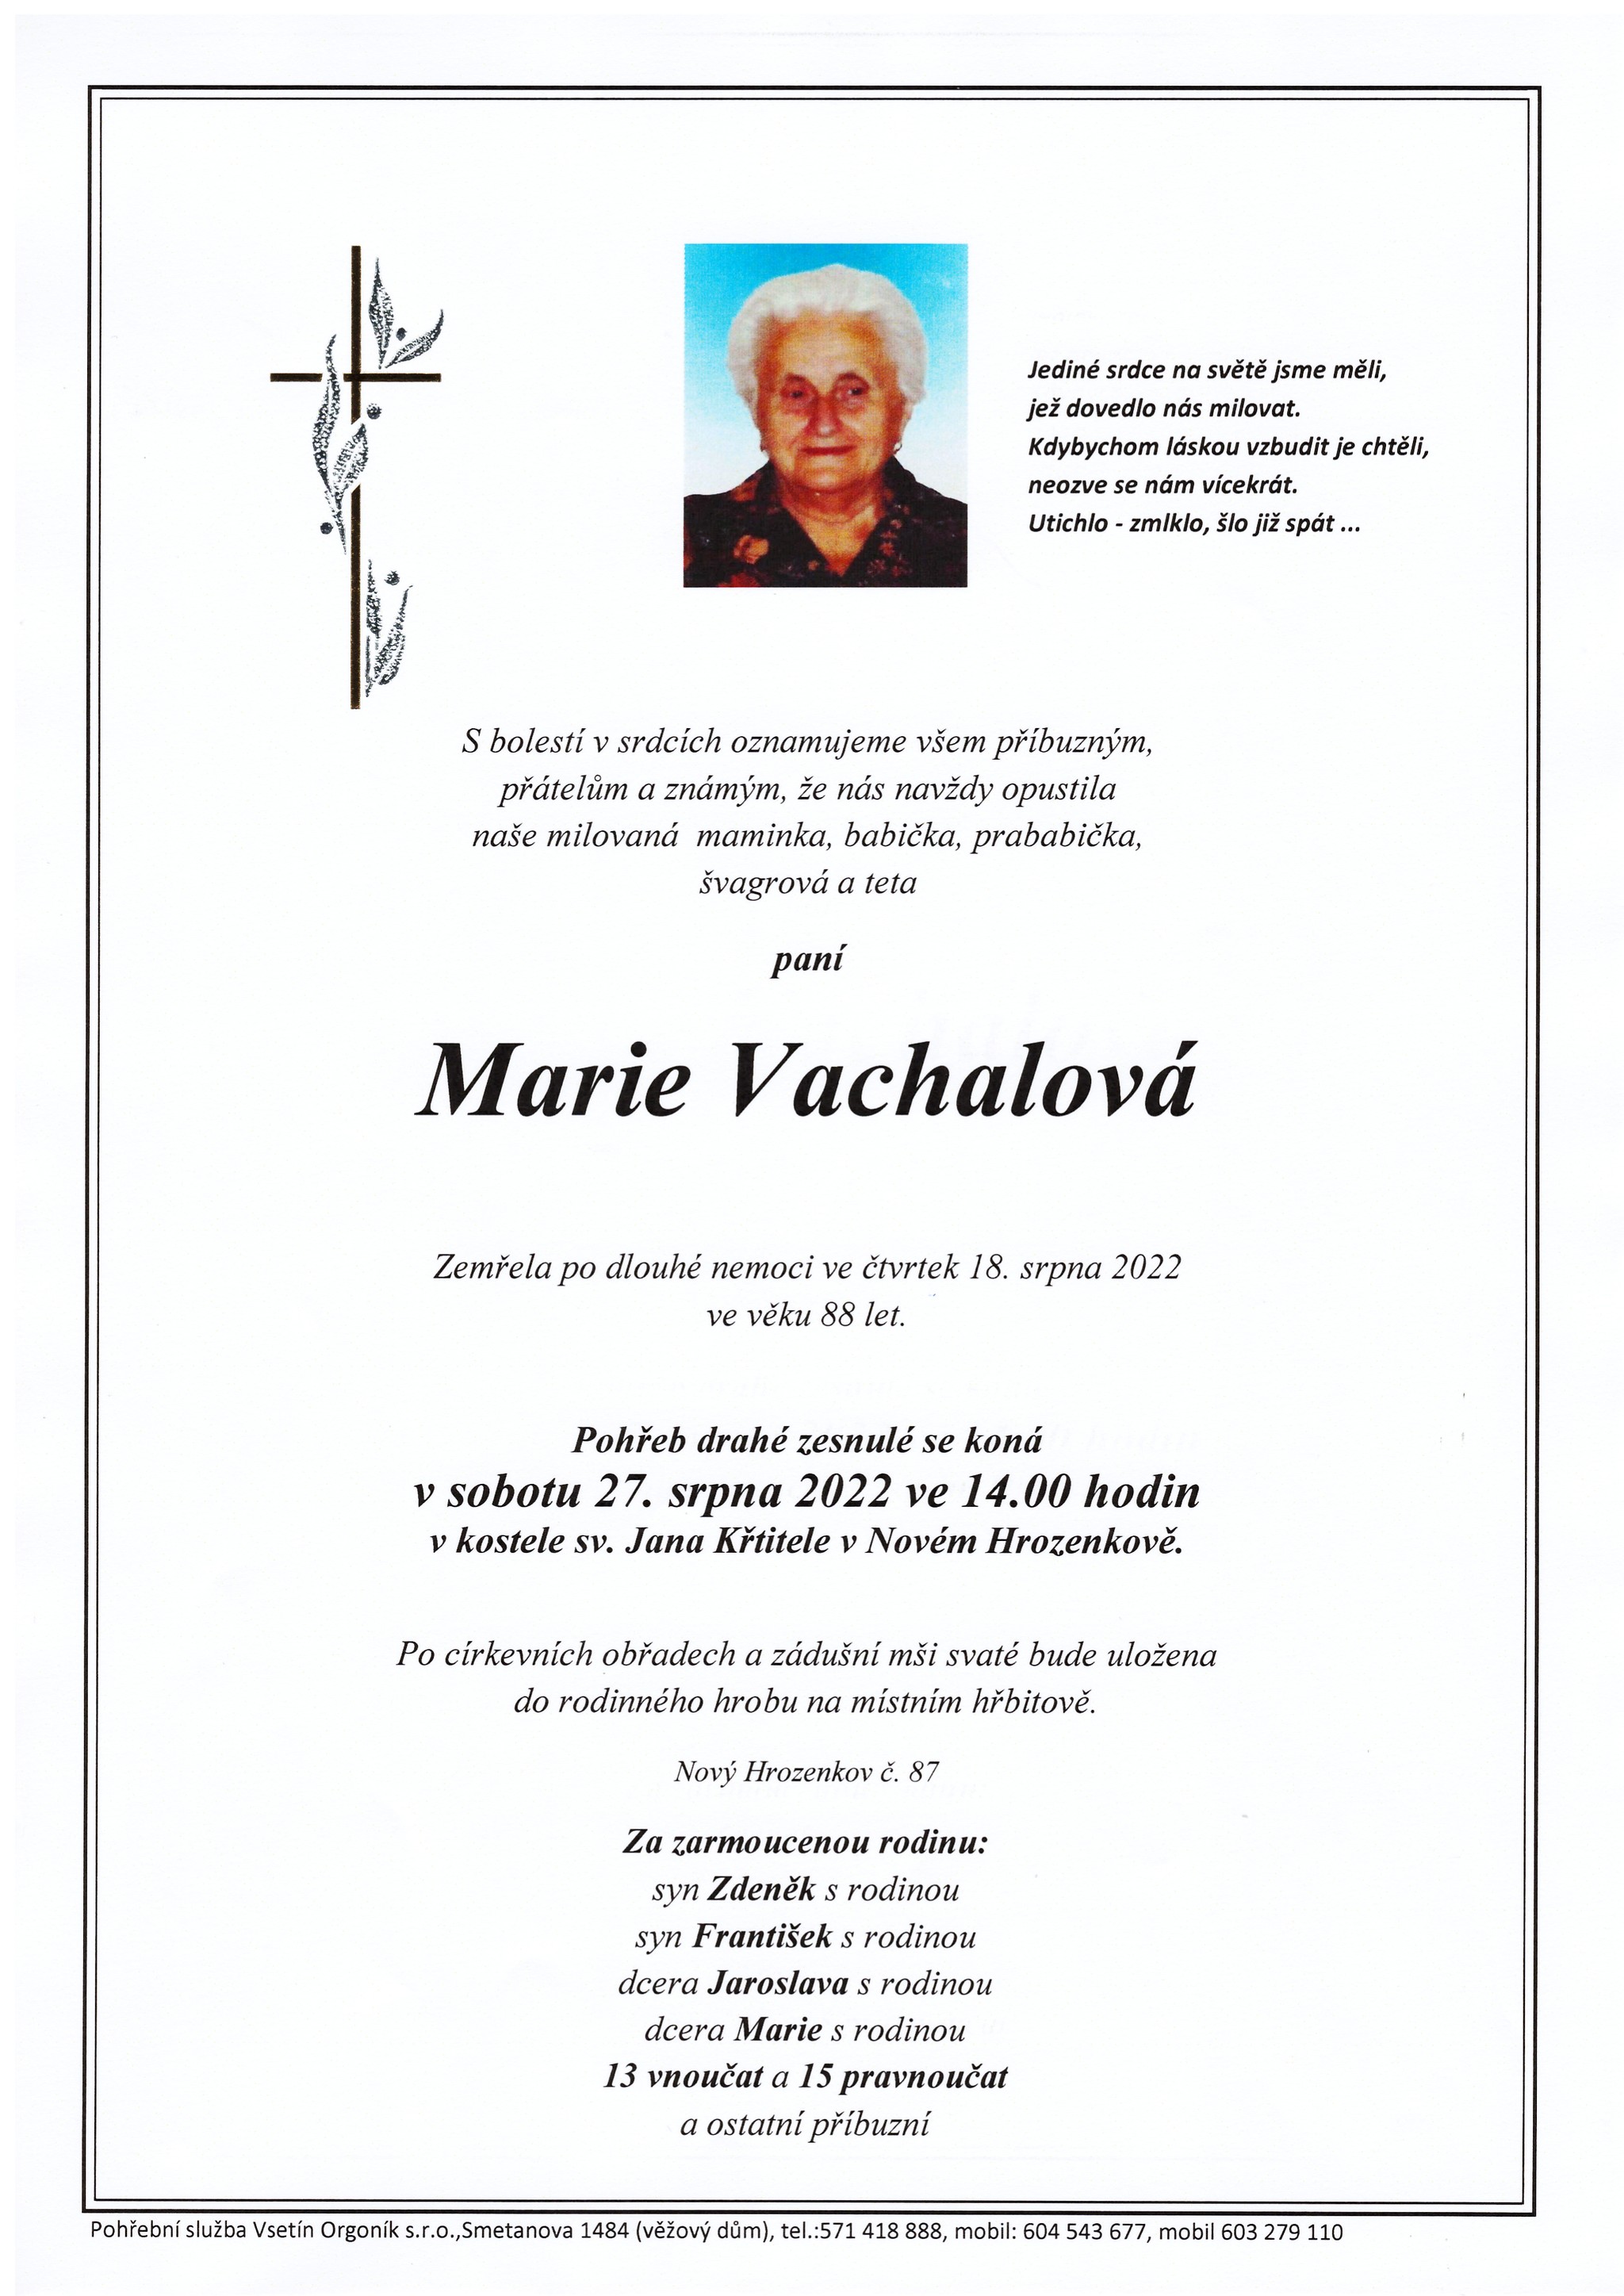 Marie Vachalová